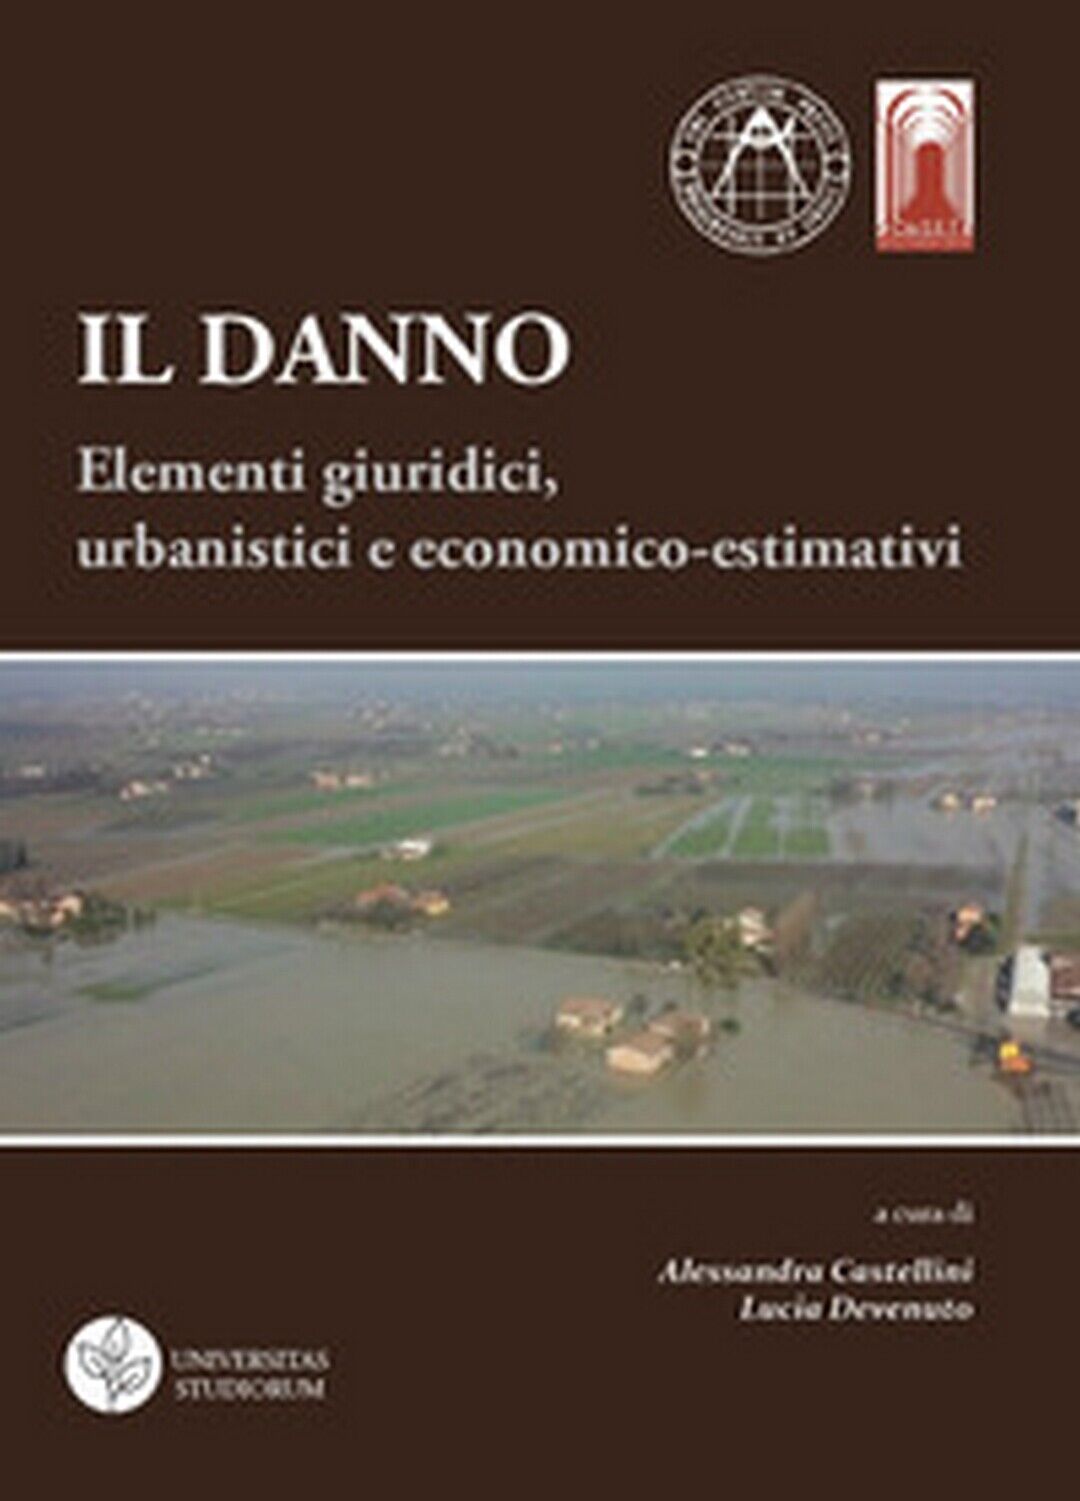 Il danno. Elementi giuridici, urbanistici e economico-estimativi  di A. Castelli libro usato